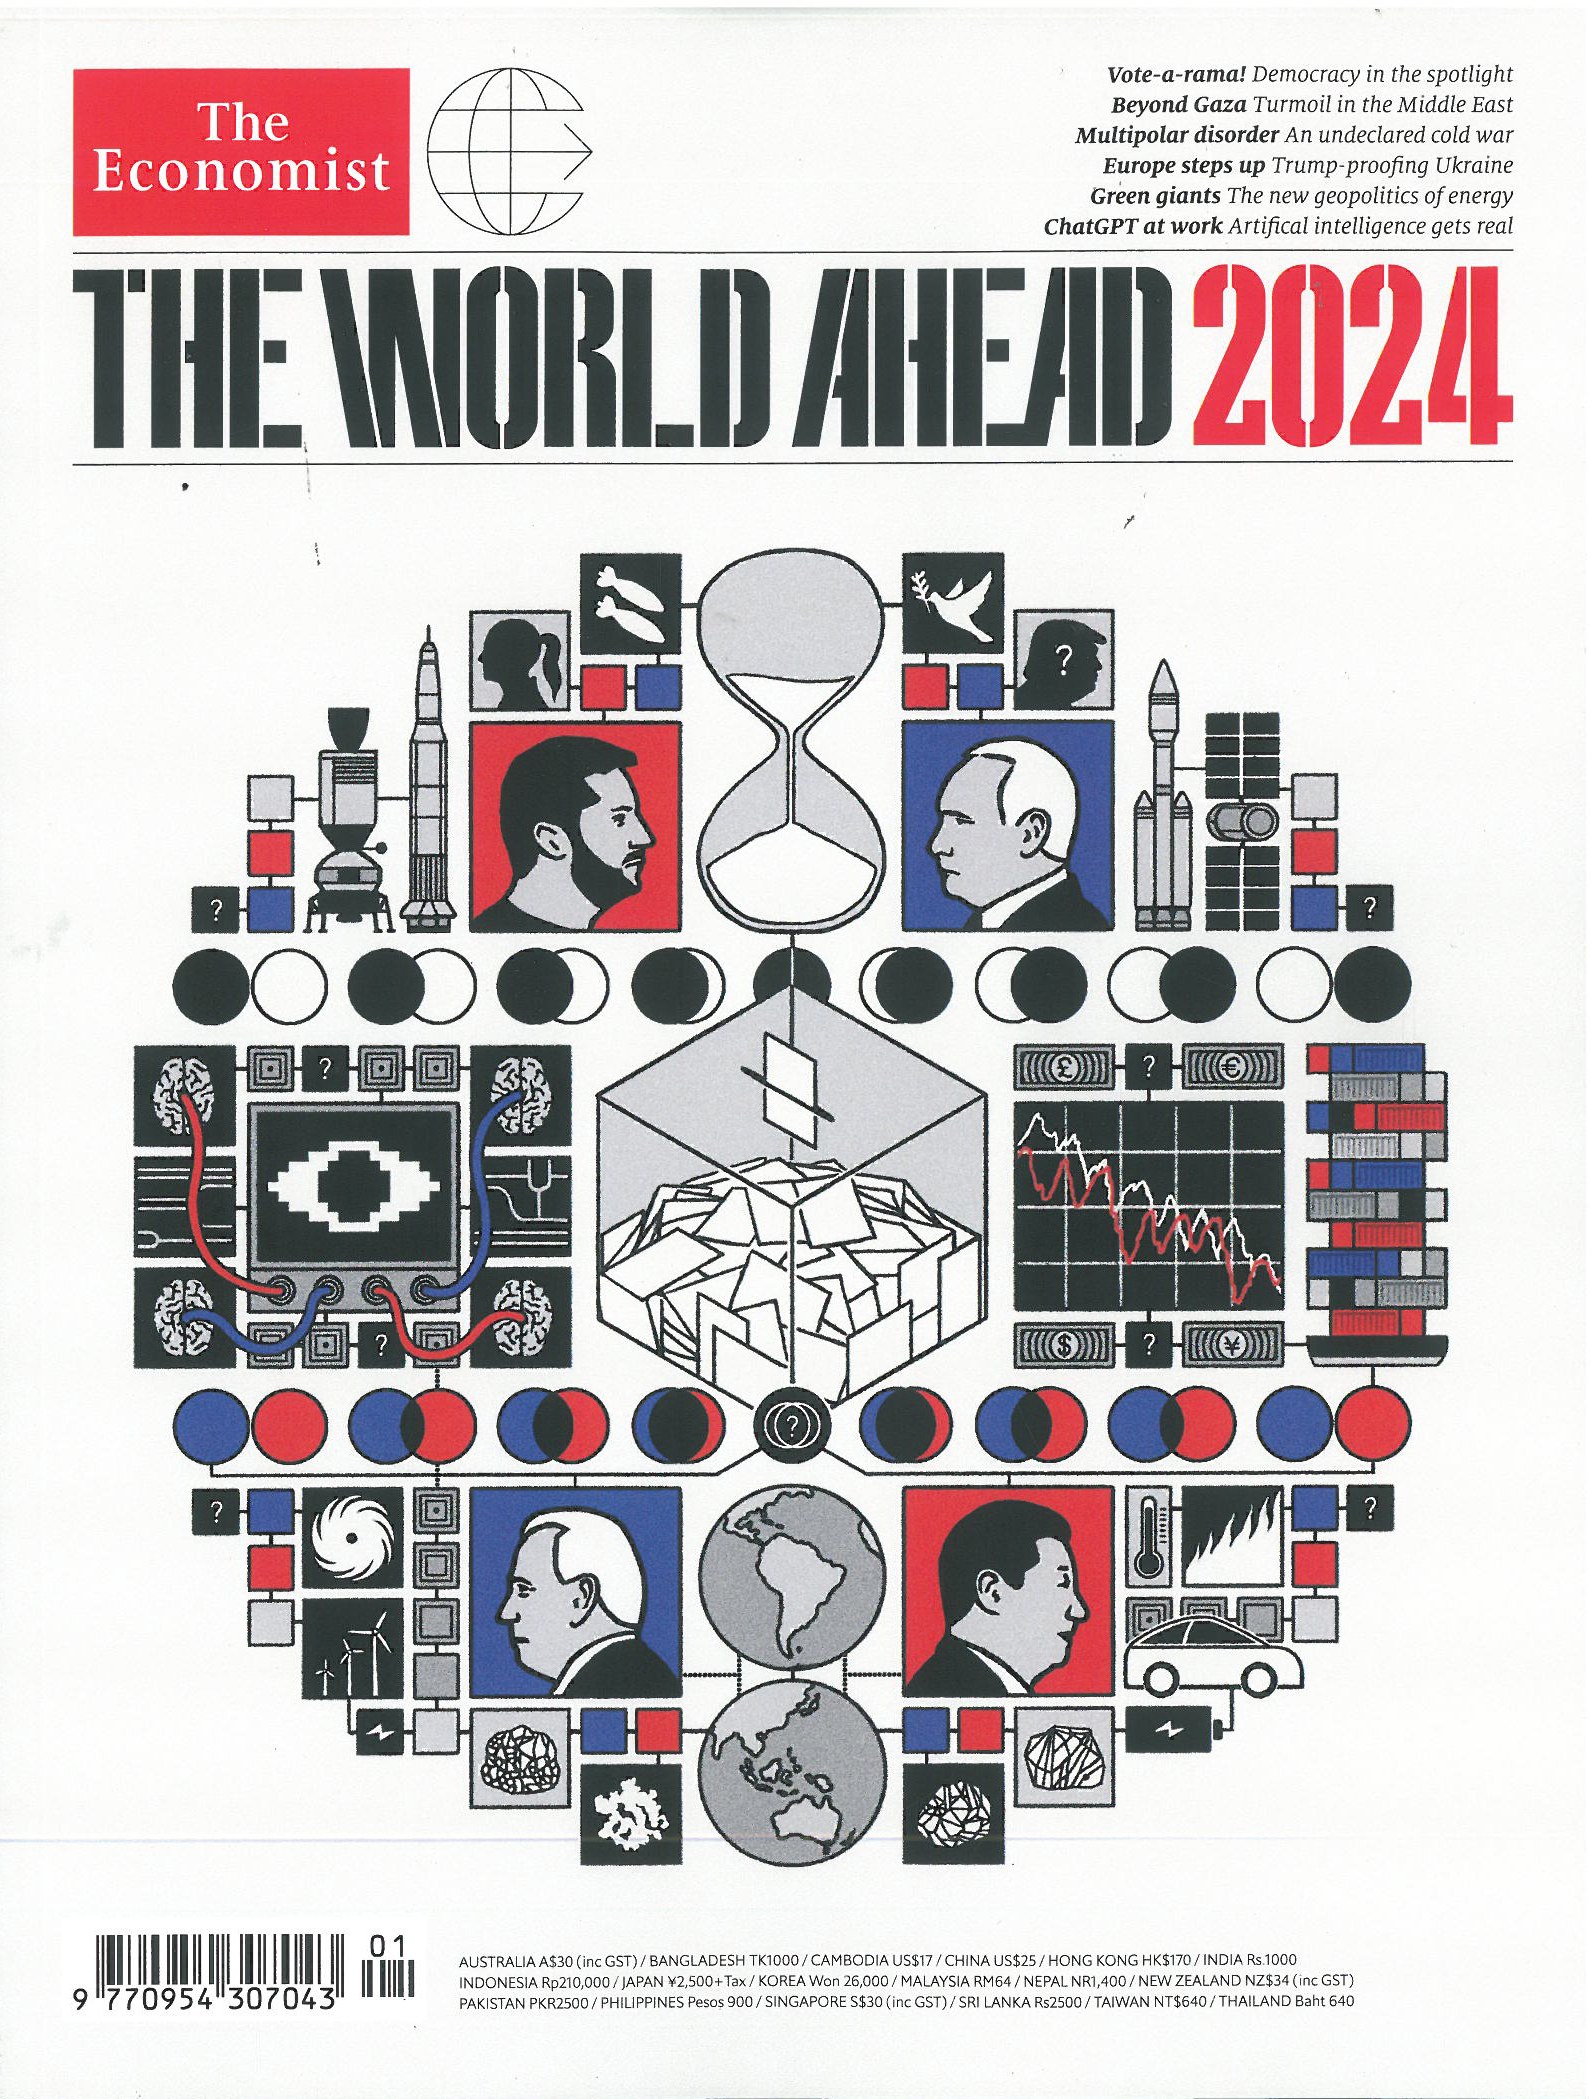 THE WORLD AHEAD 2024